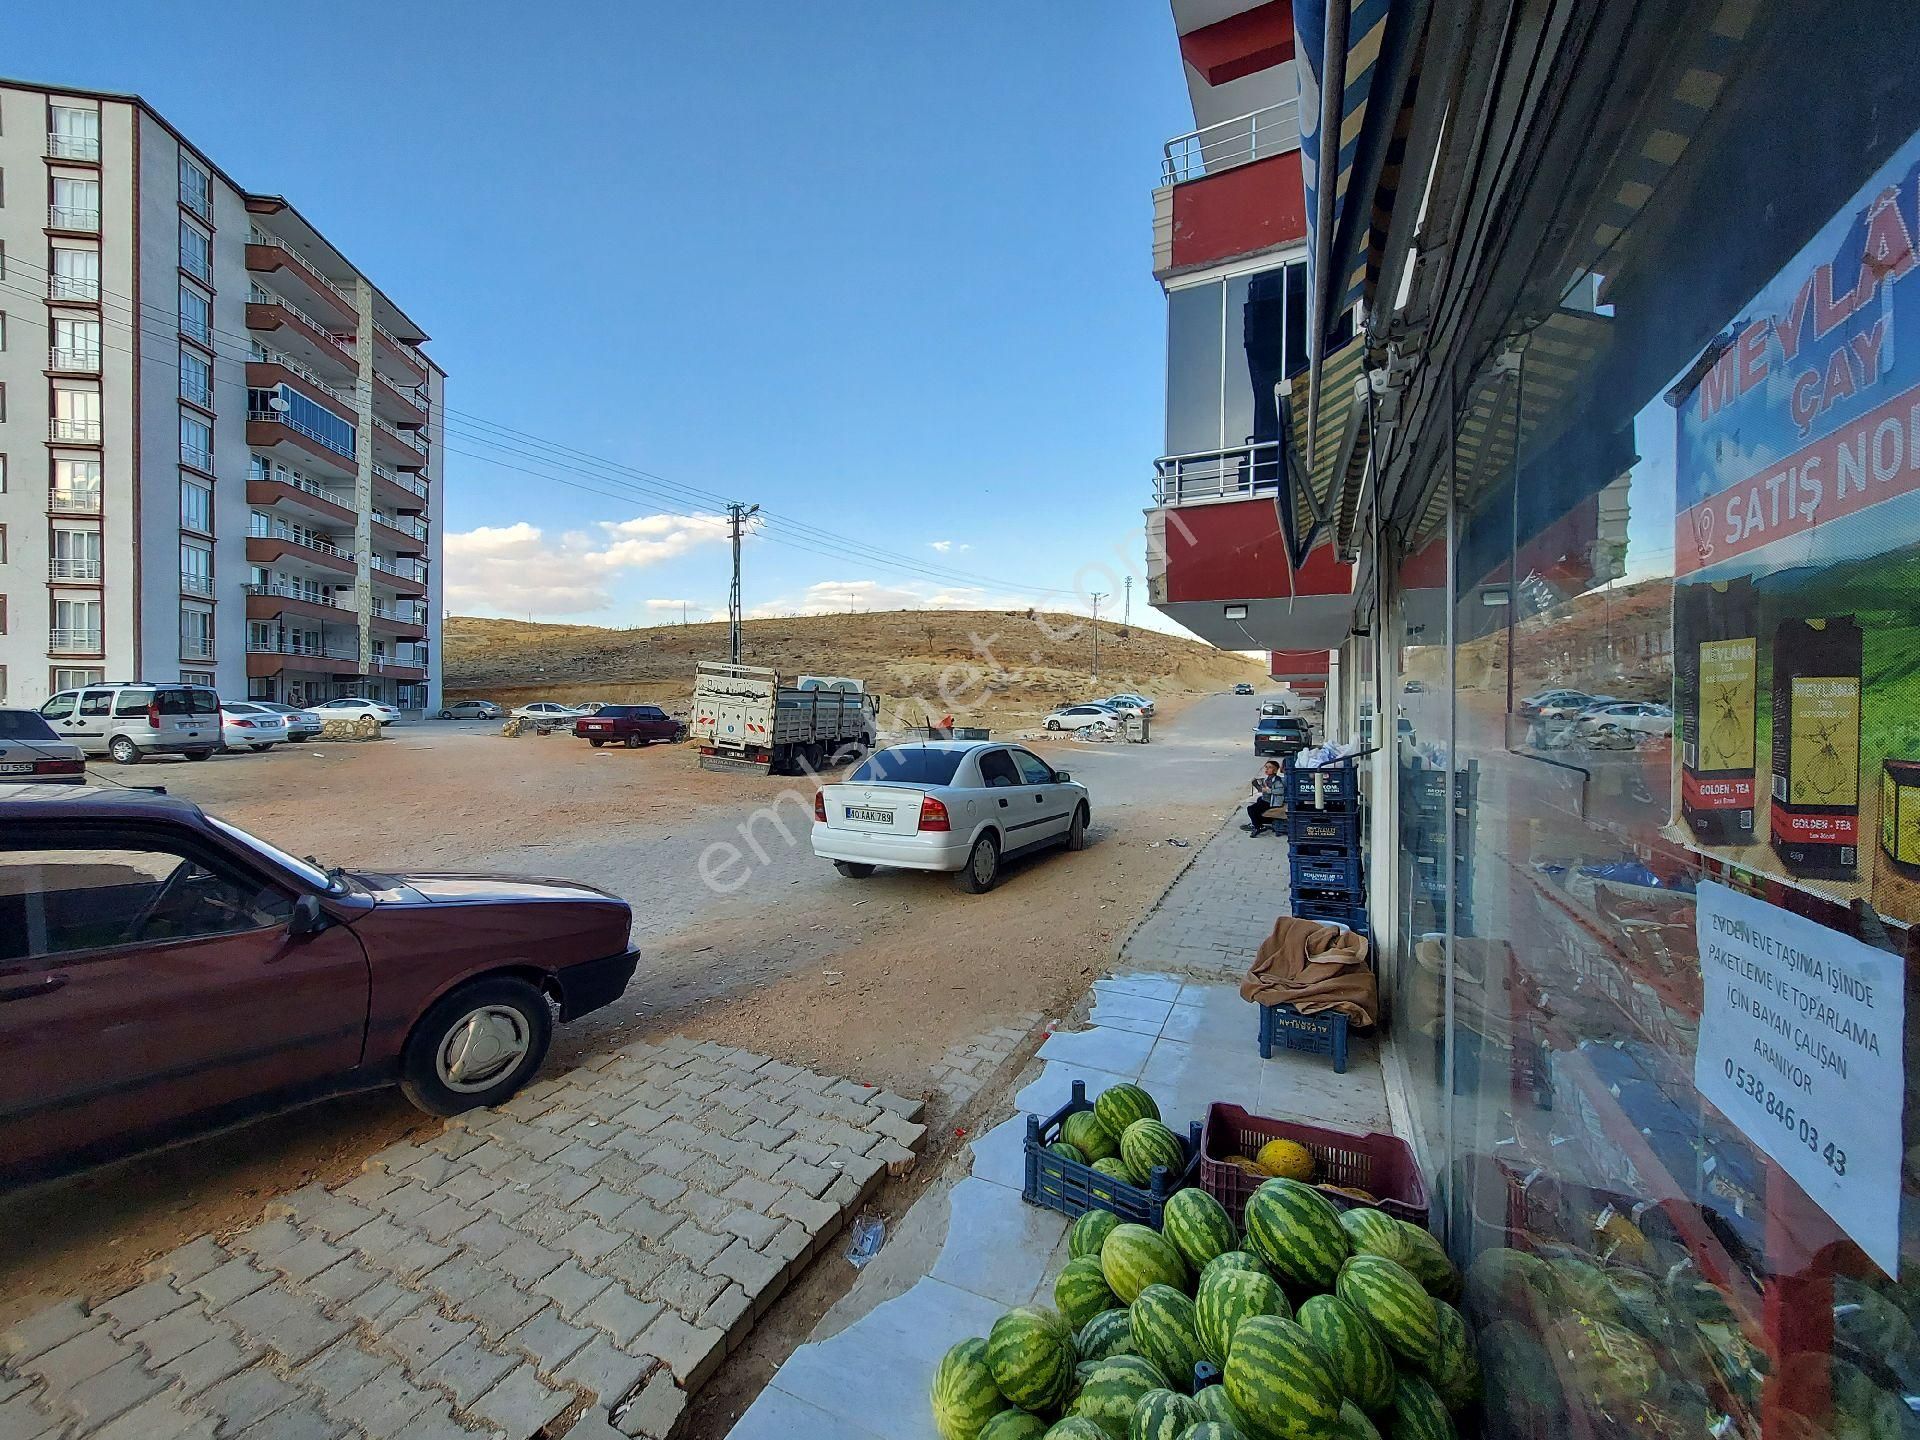 Besni 15 Temmuz Şehitler Satılık Dükkan & Mağaza Besni'de satılık mahalle marketi 